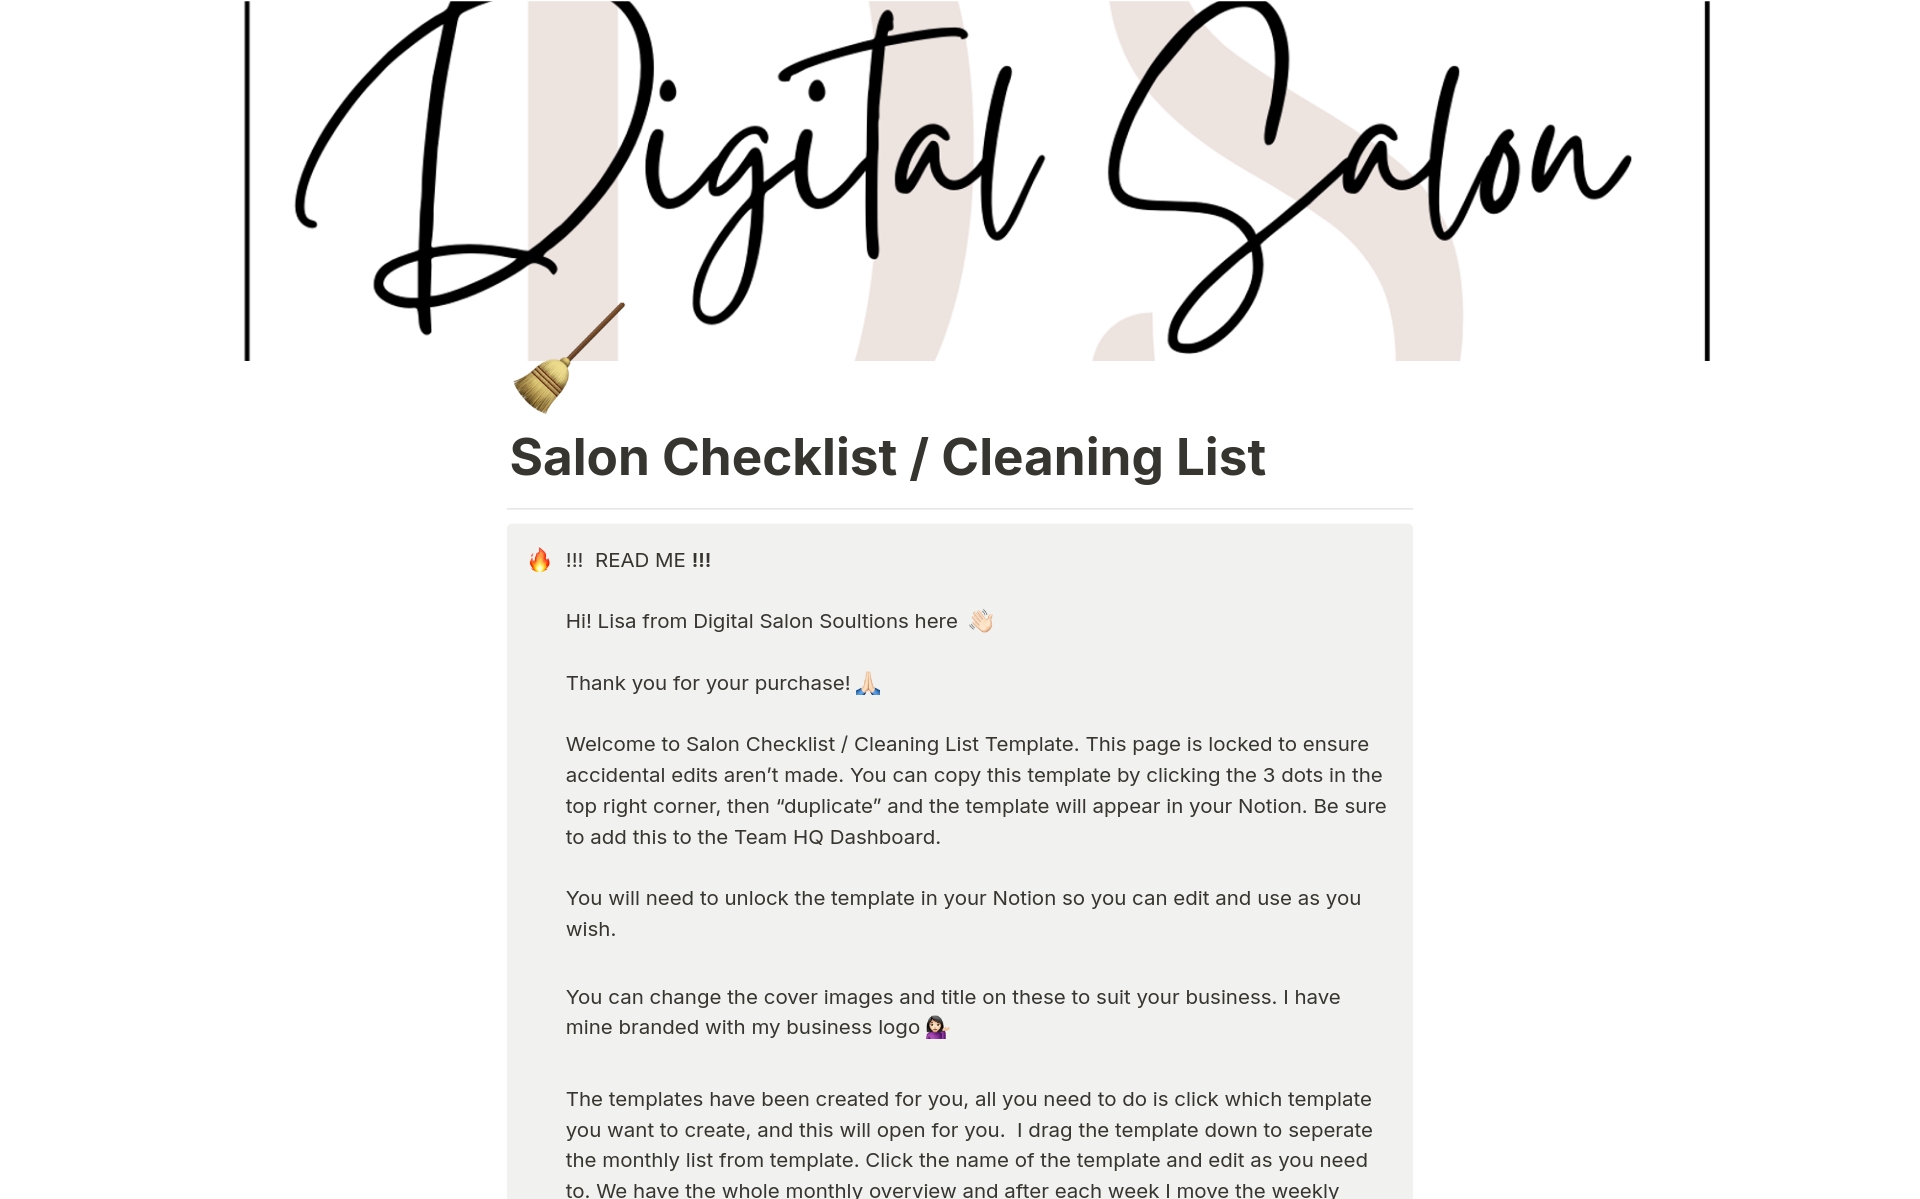 En förhandsgranskning av mallen för Salon Checklist / Cleaning List